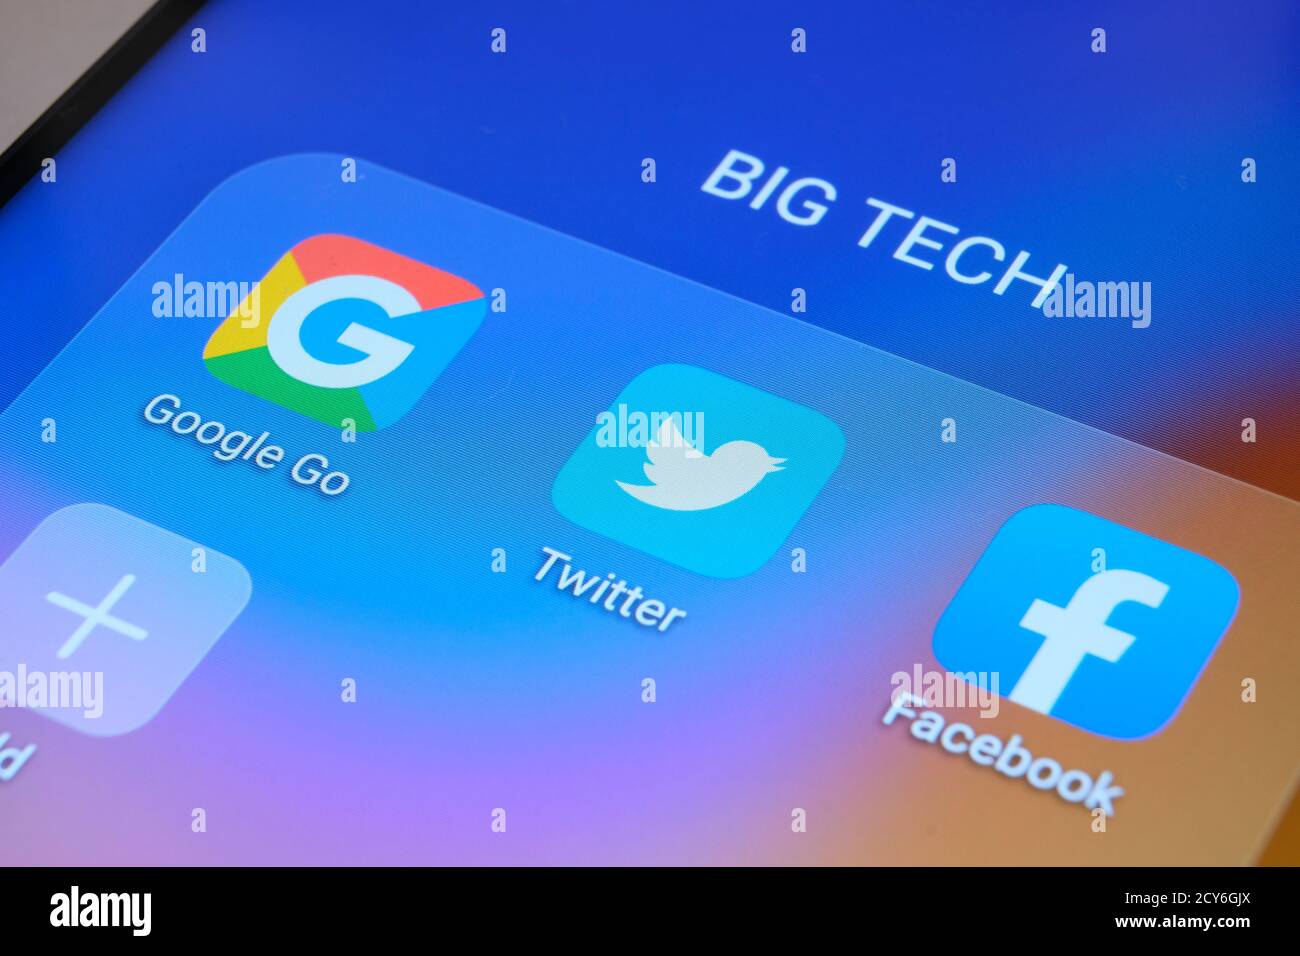 Google, Facebook, Twitter-Apps auf dem Bildschirm des Smartphones gesehen. Stockfoto